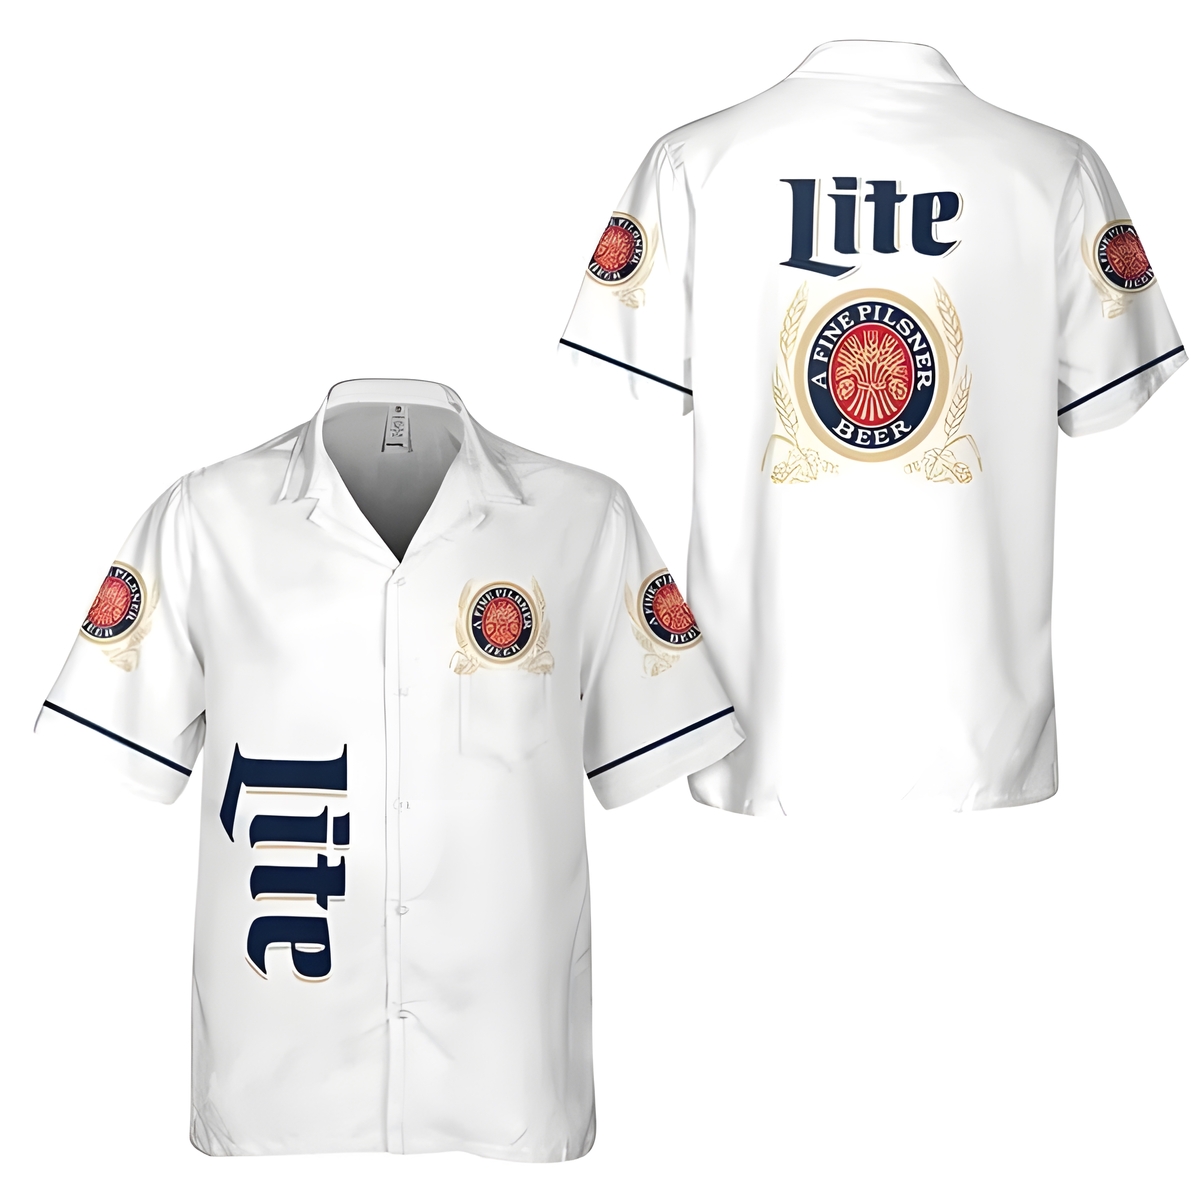 White Miller Lite Hawaiian Shirt Basic Gift For Him